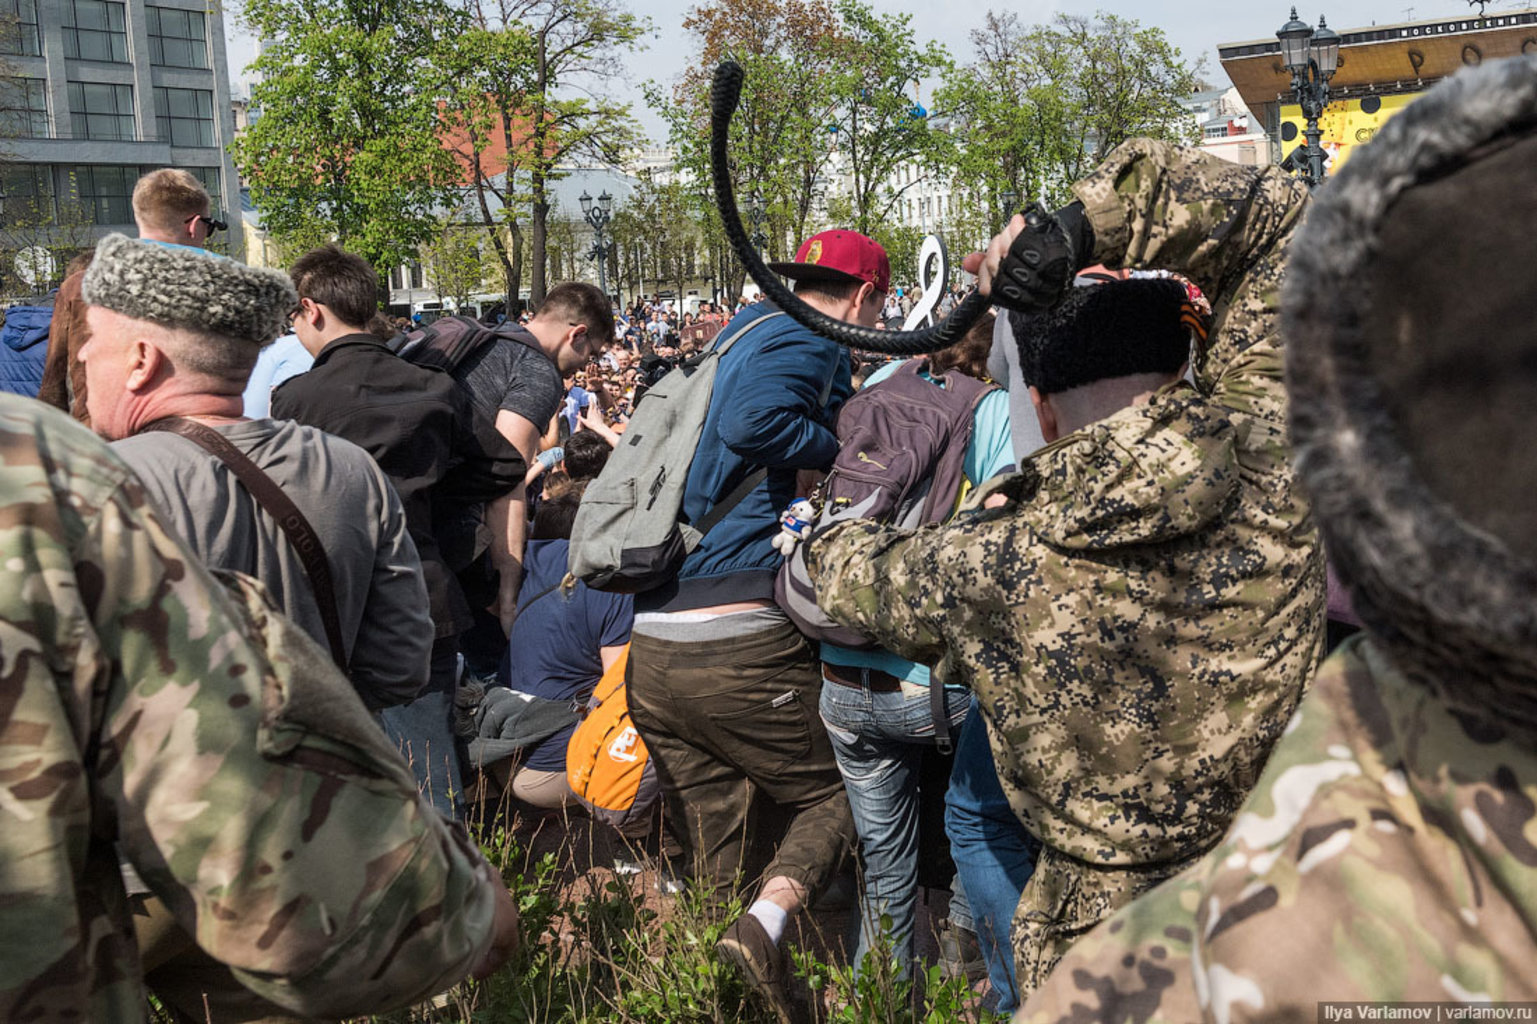 5 мая 2018 г. Казаки нагайками разгоняют митинг в Москве. Казаки избивают людей нагайками. Казаки с нагайками в Москве.